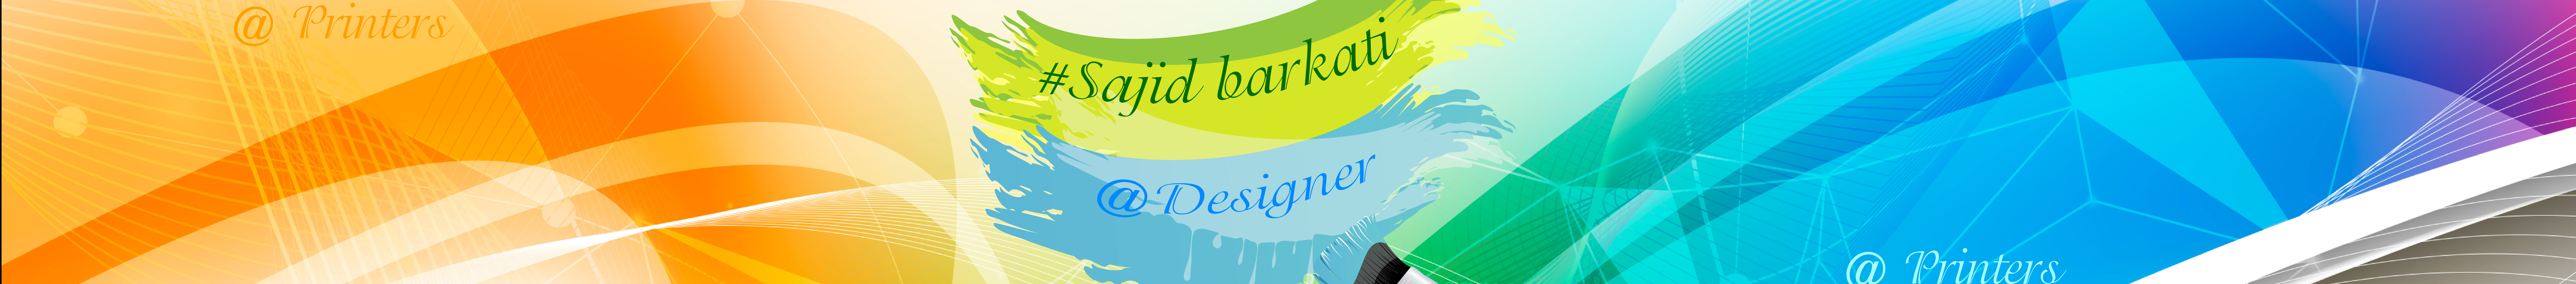 sajid Barkati's profile banner